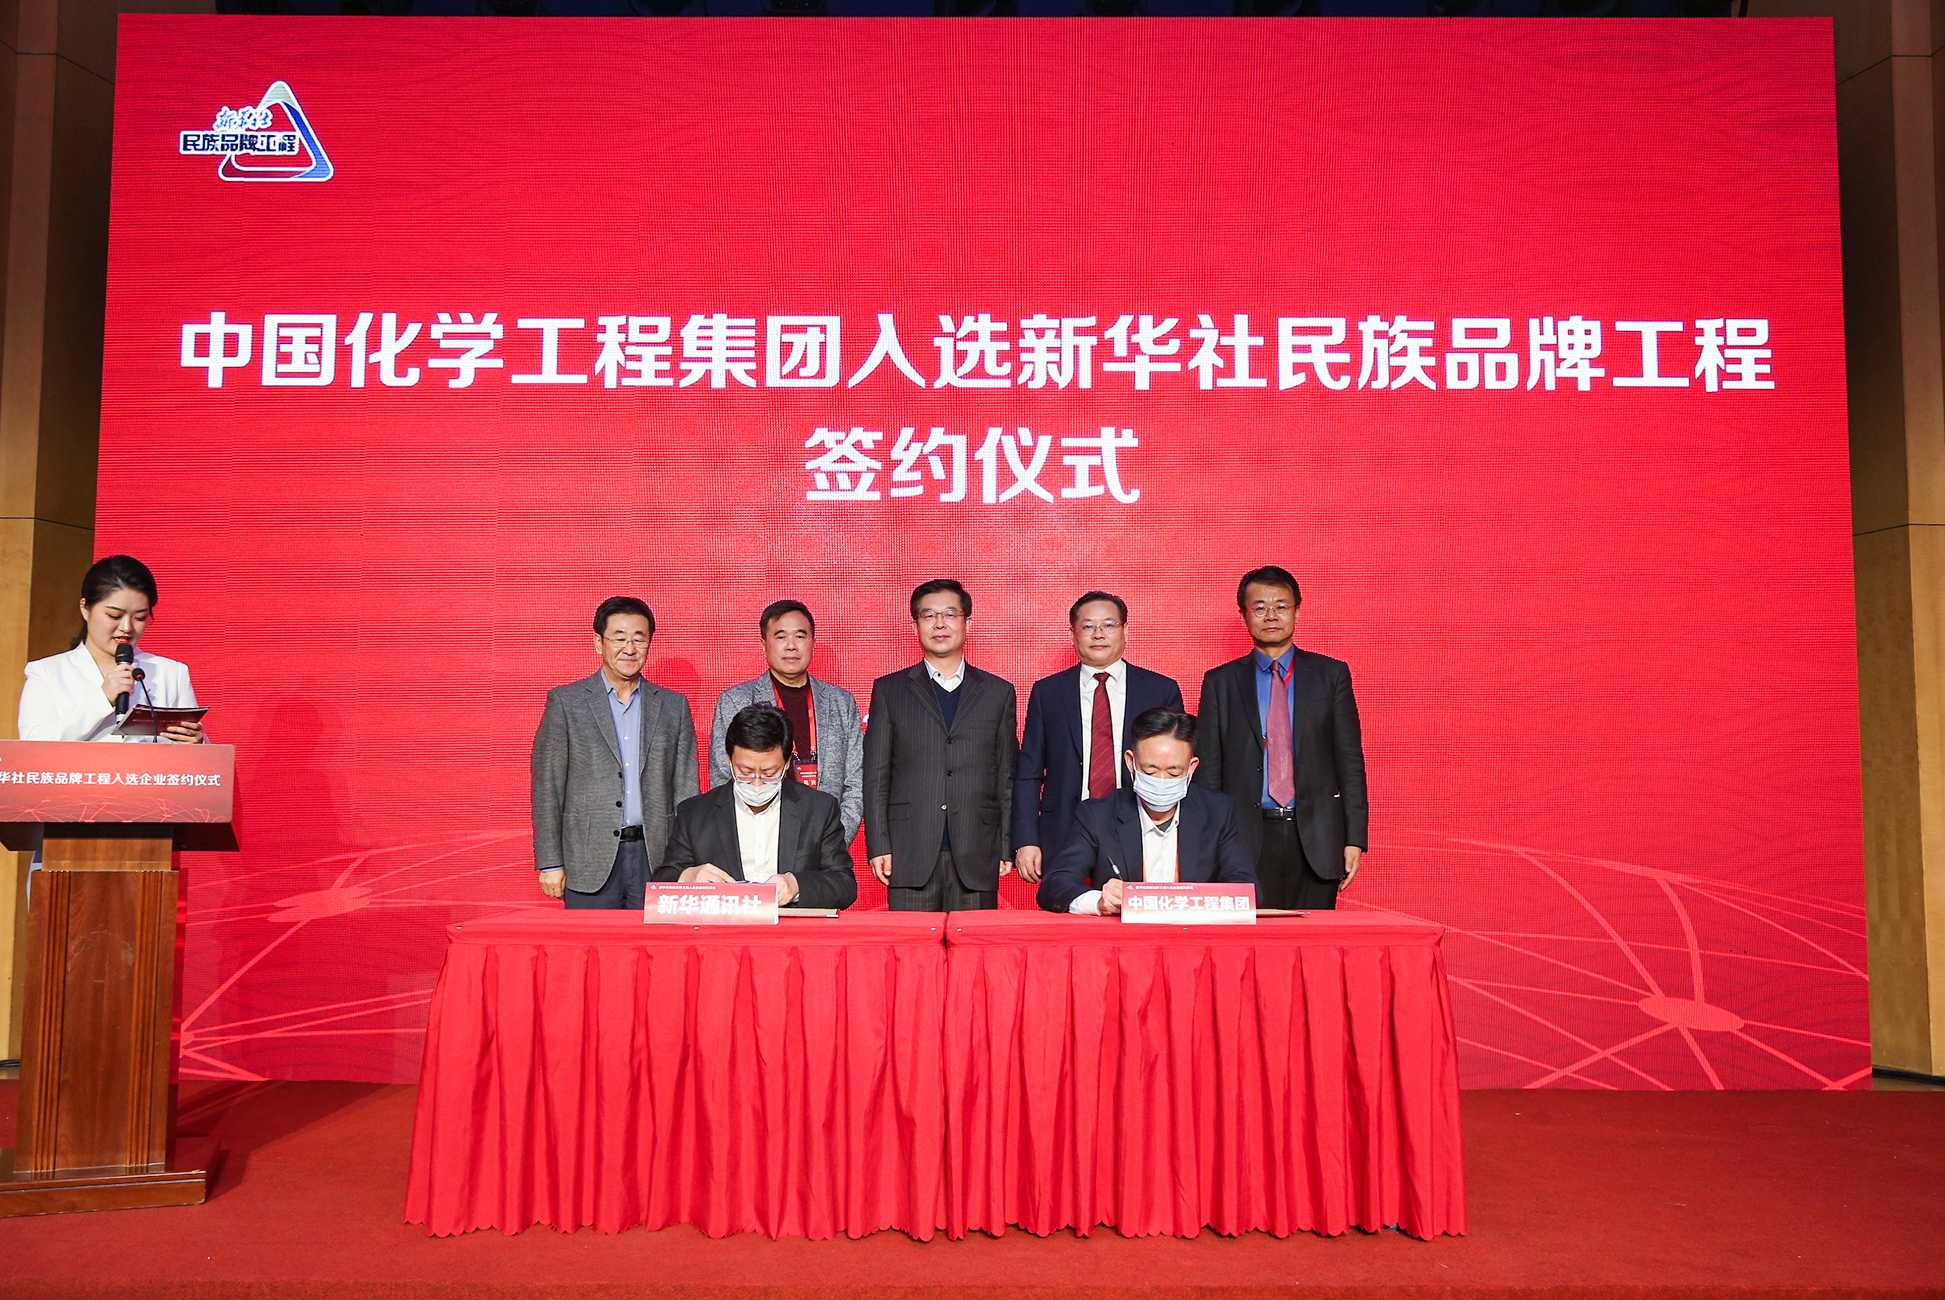 中国化学工程集团有限公司党委副书记刘德辉、新华社新闻信息中心主任储学军代表双方签约。